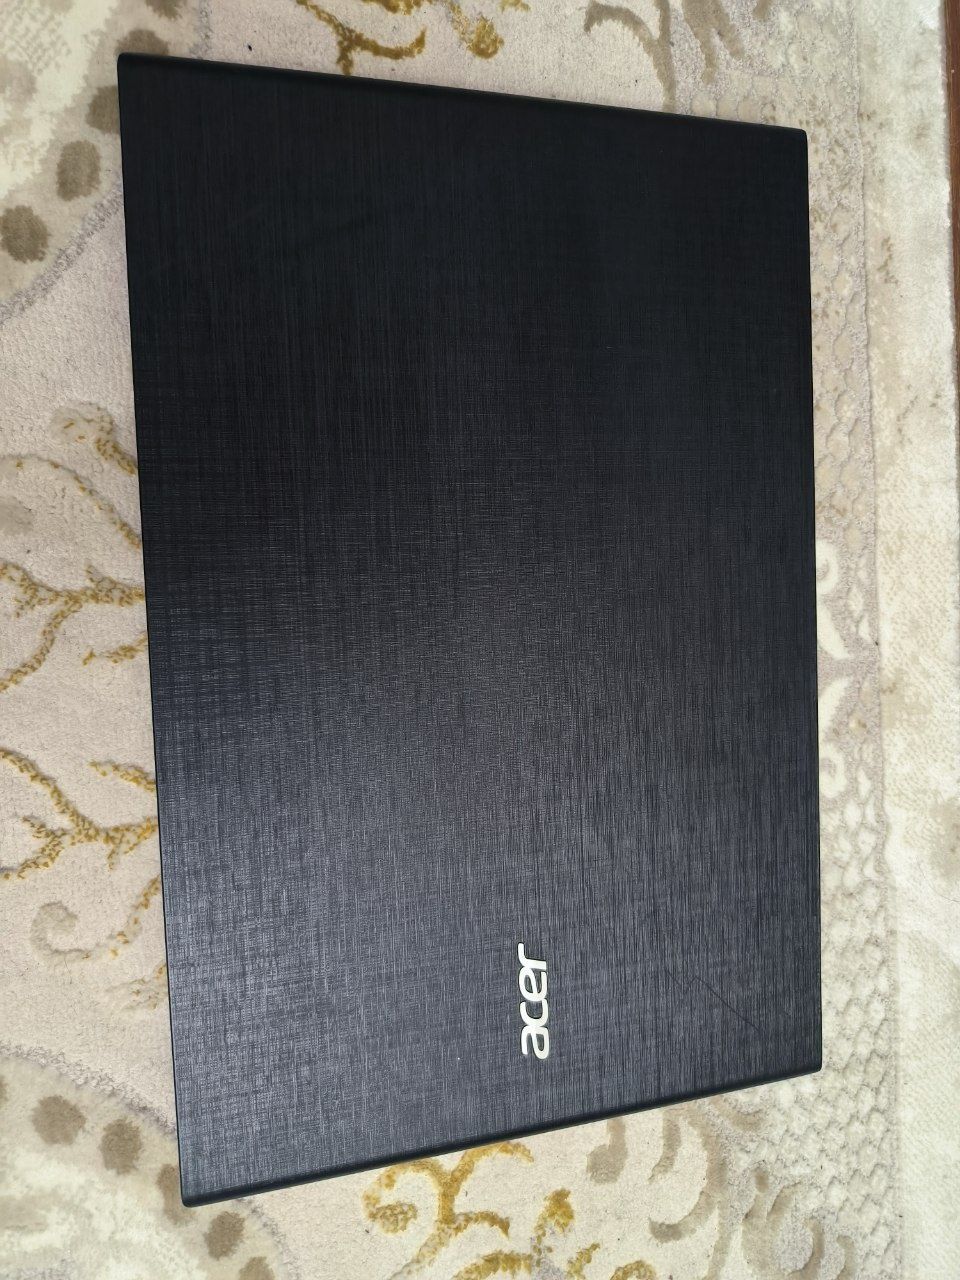 Acer core i5 + Nvidia GeForce